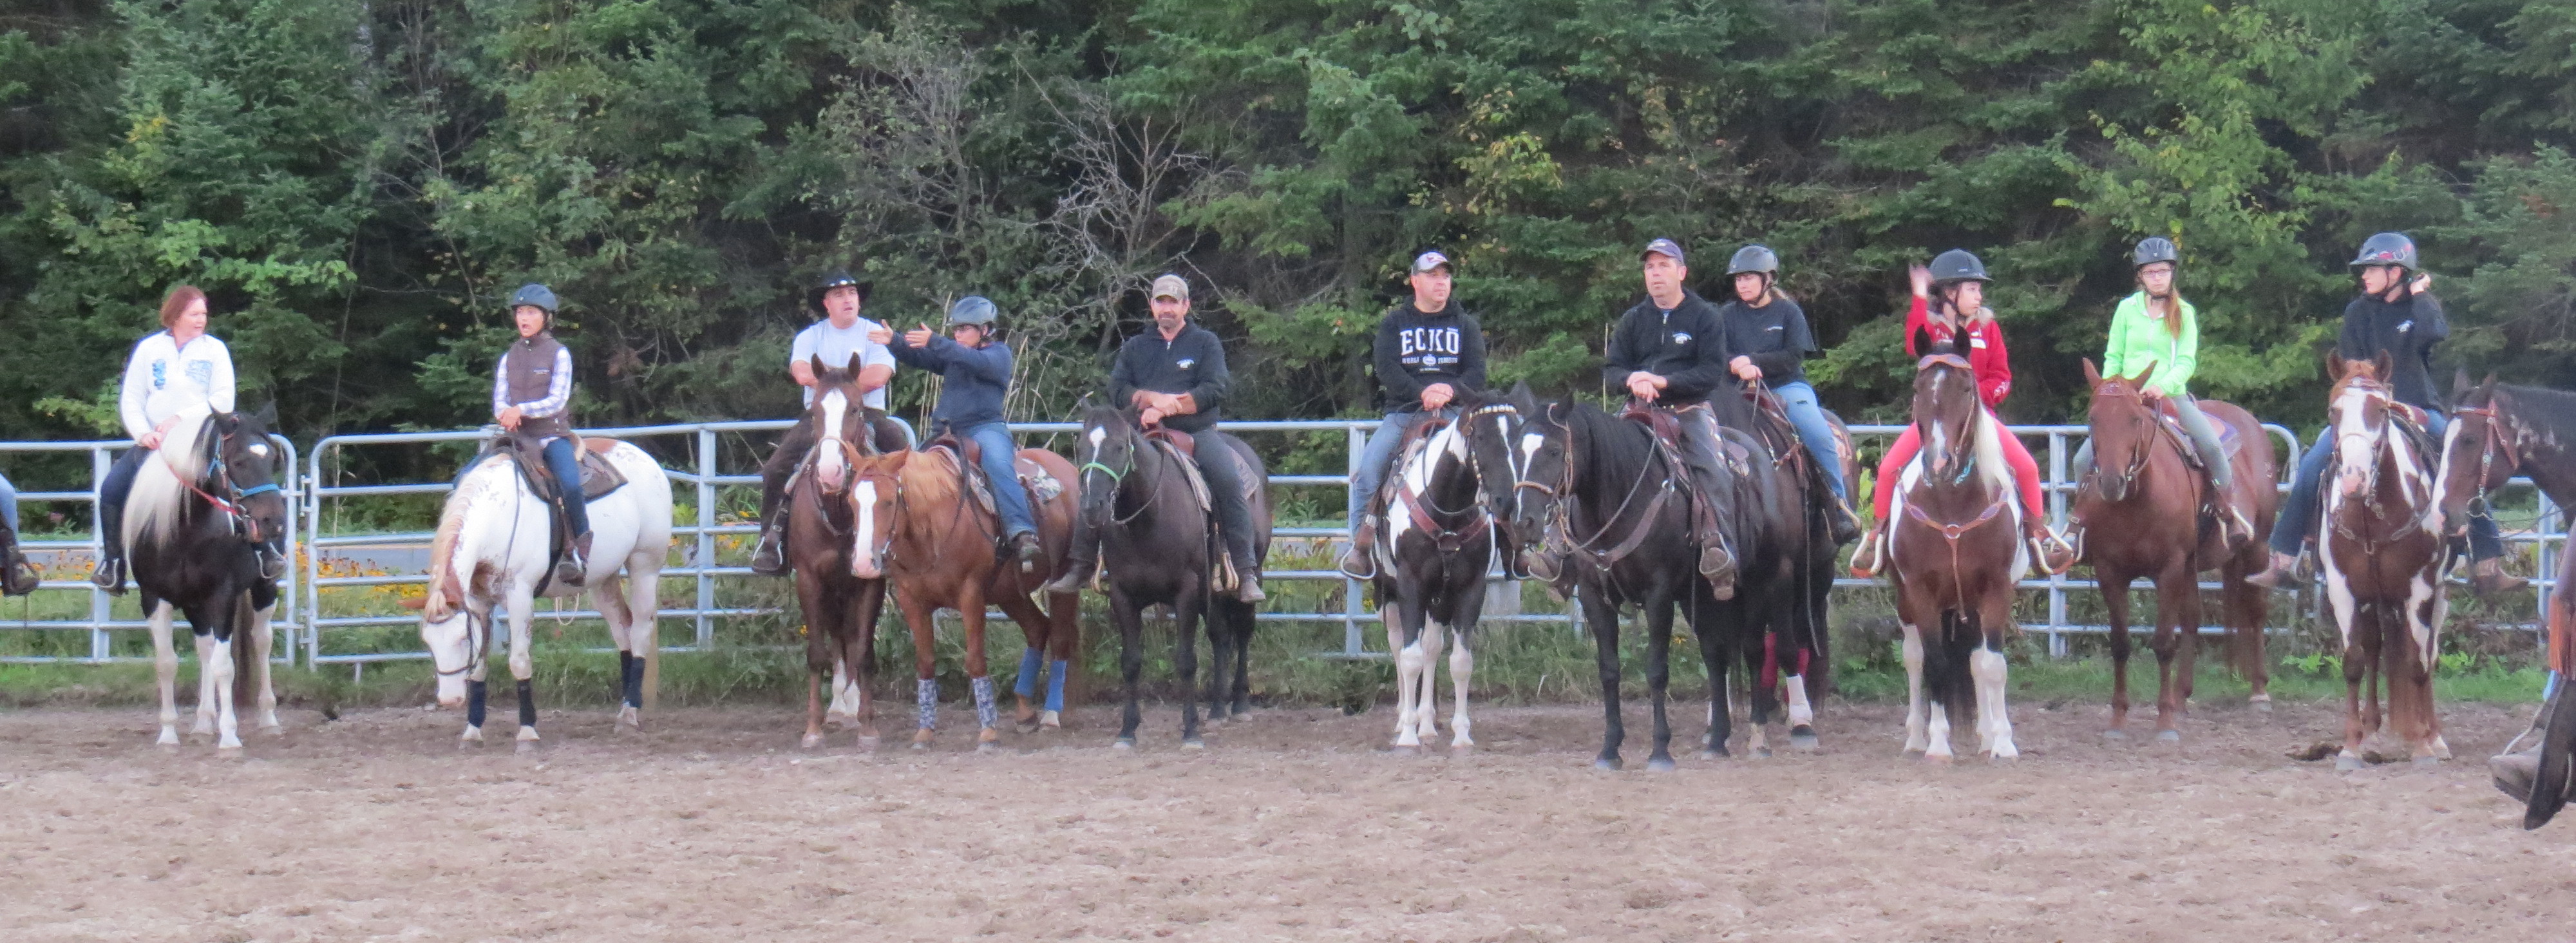 Cours d'équitation / Ranch S. Martin Drummondville